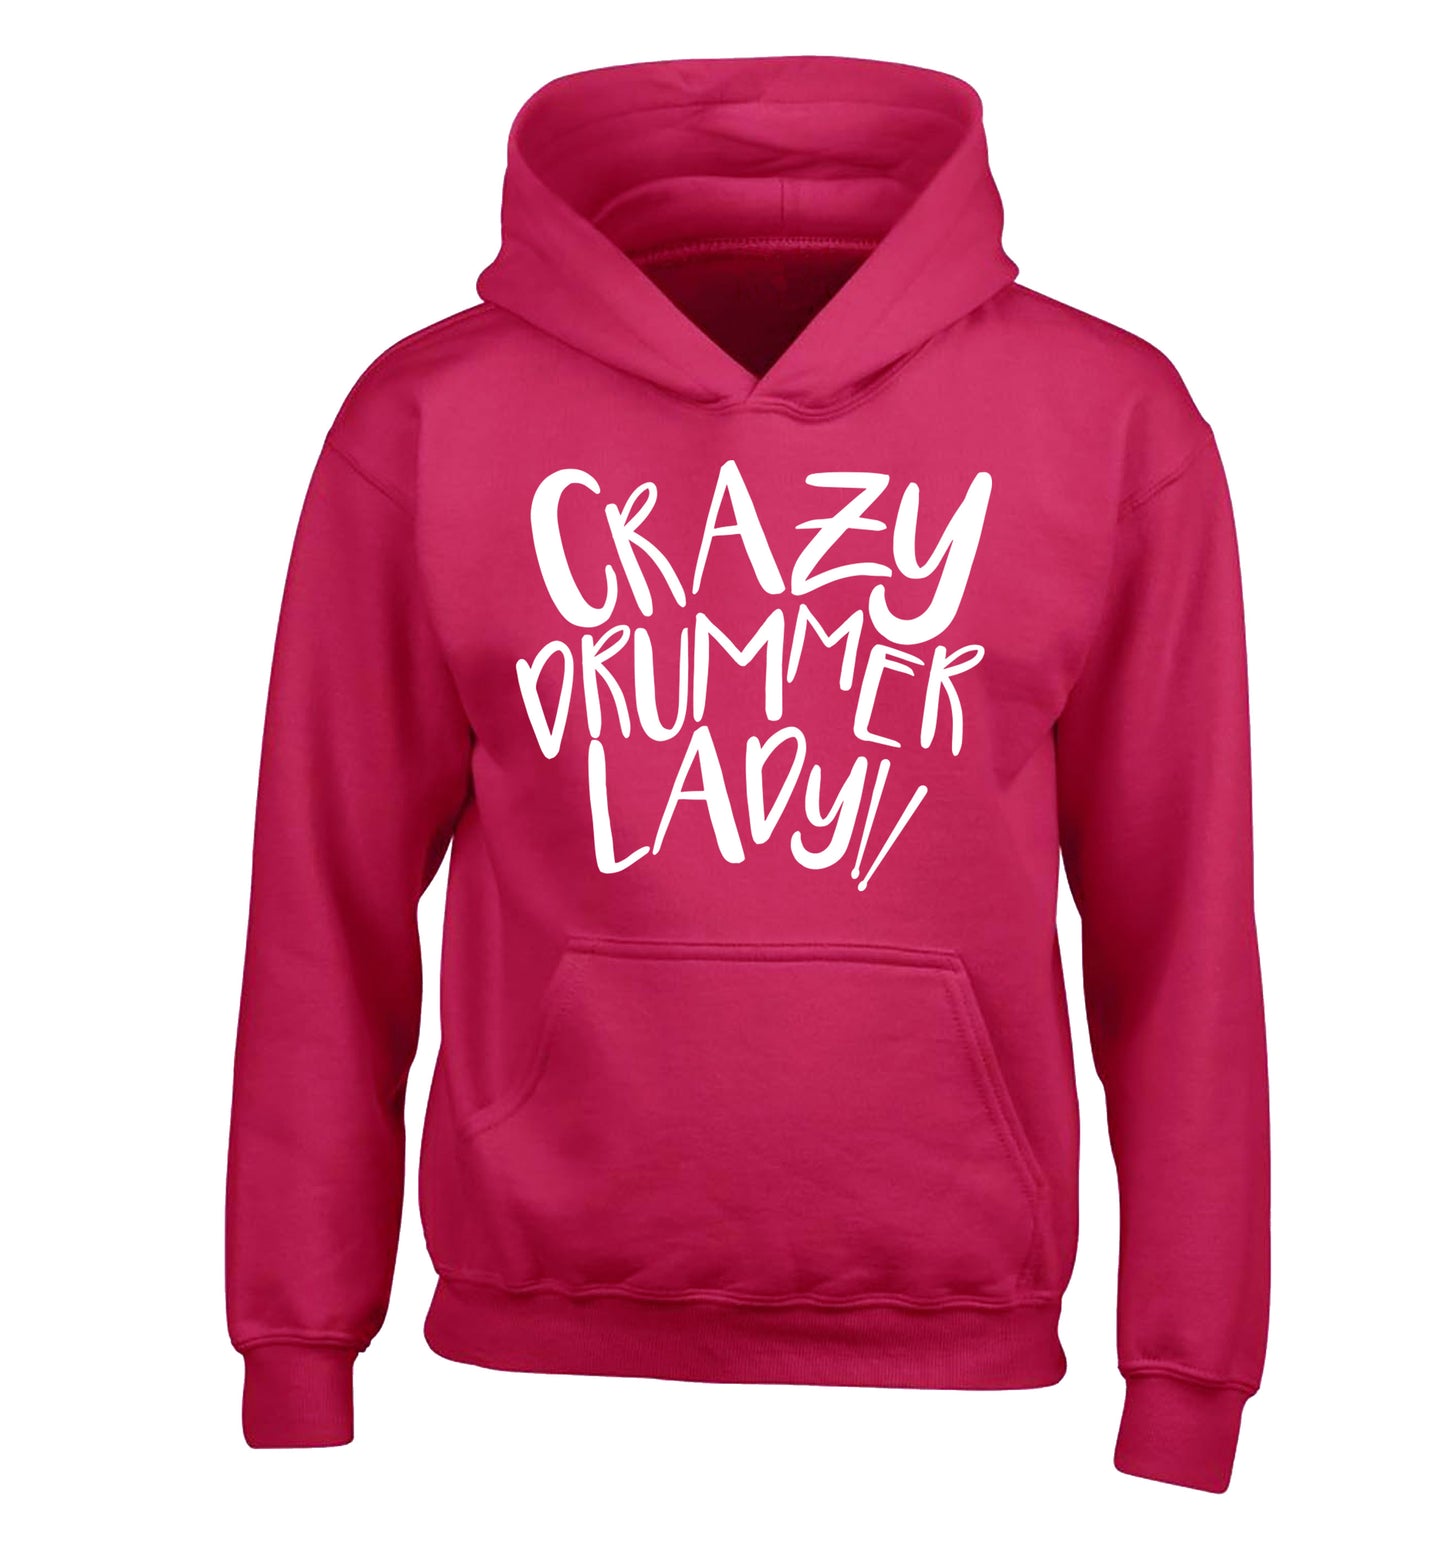 Crazy drummer lady children's pink hoodie 12-14 Years